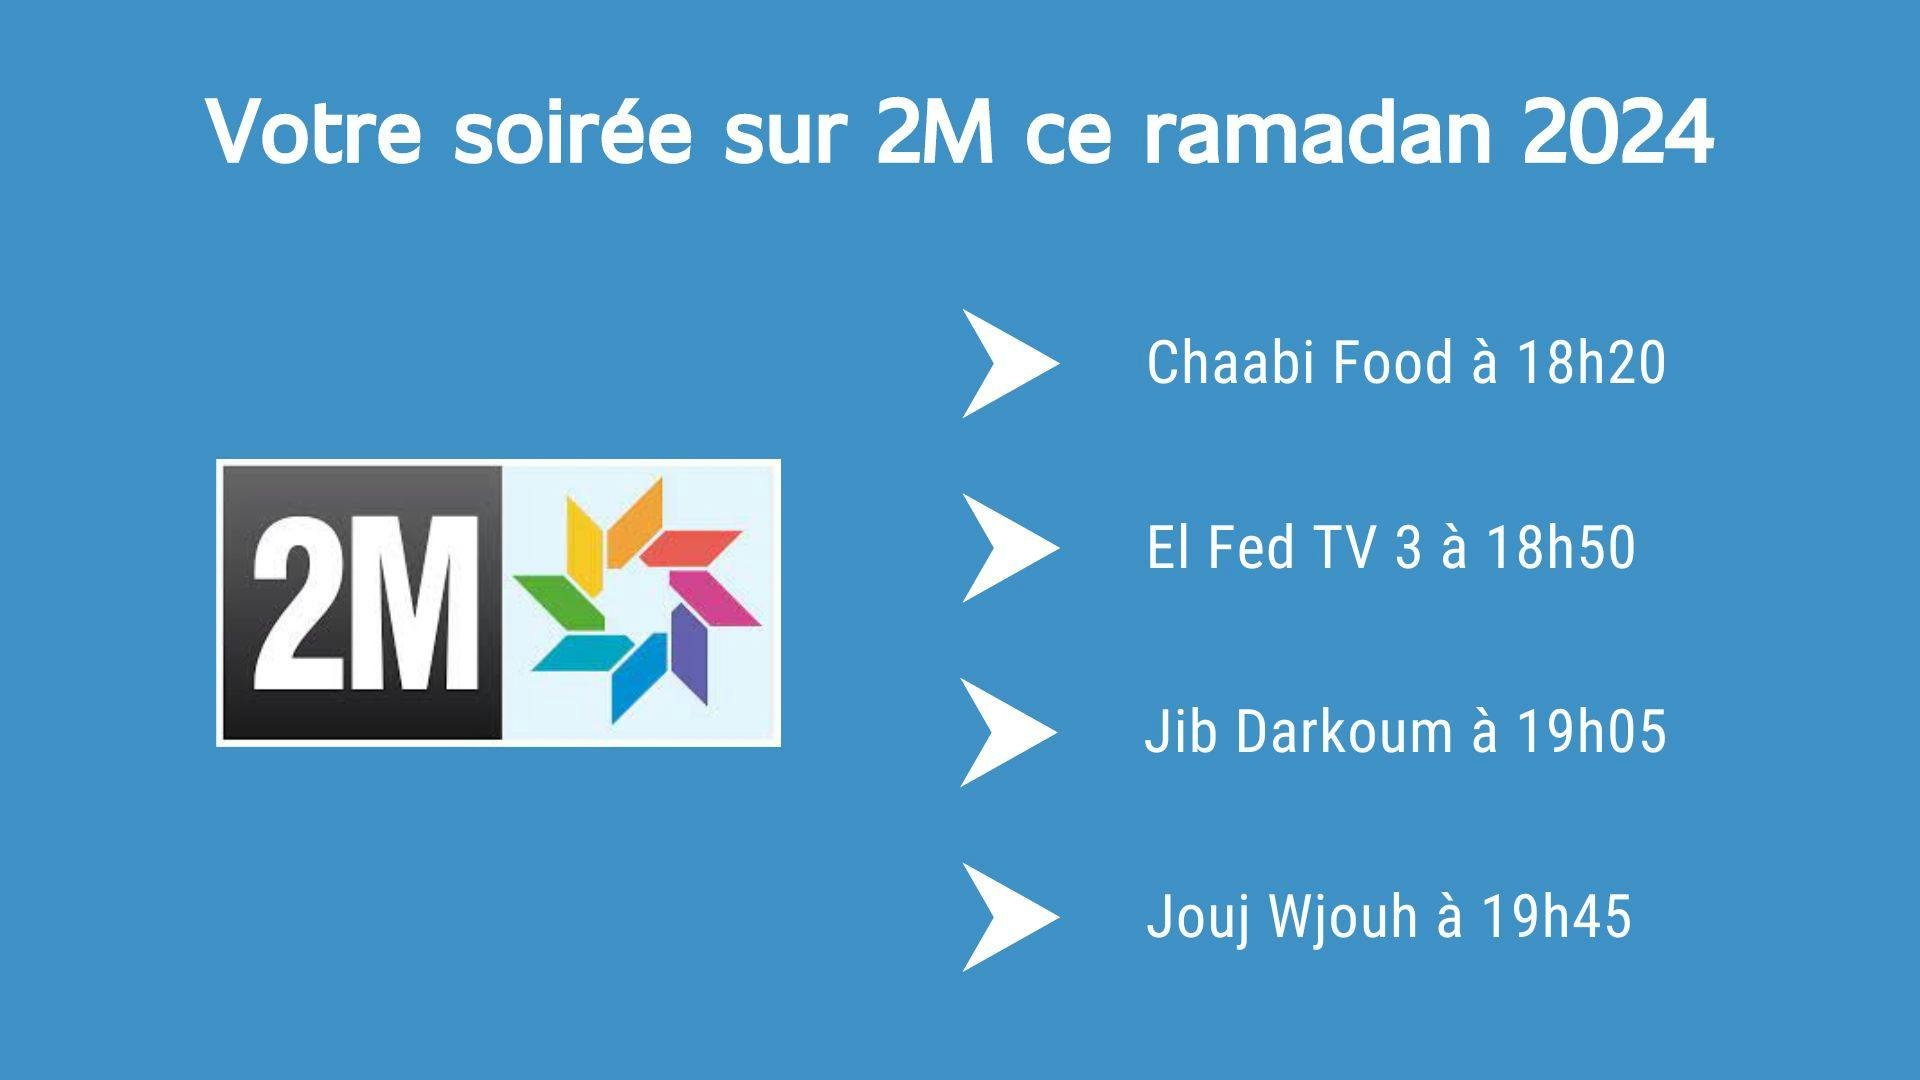 illustration montrant les programmes de la soirée ce ramadan 2024 sur la chaîne marocaine 2M